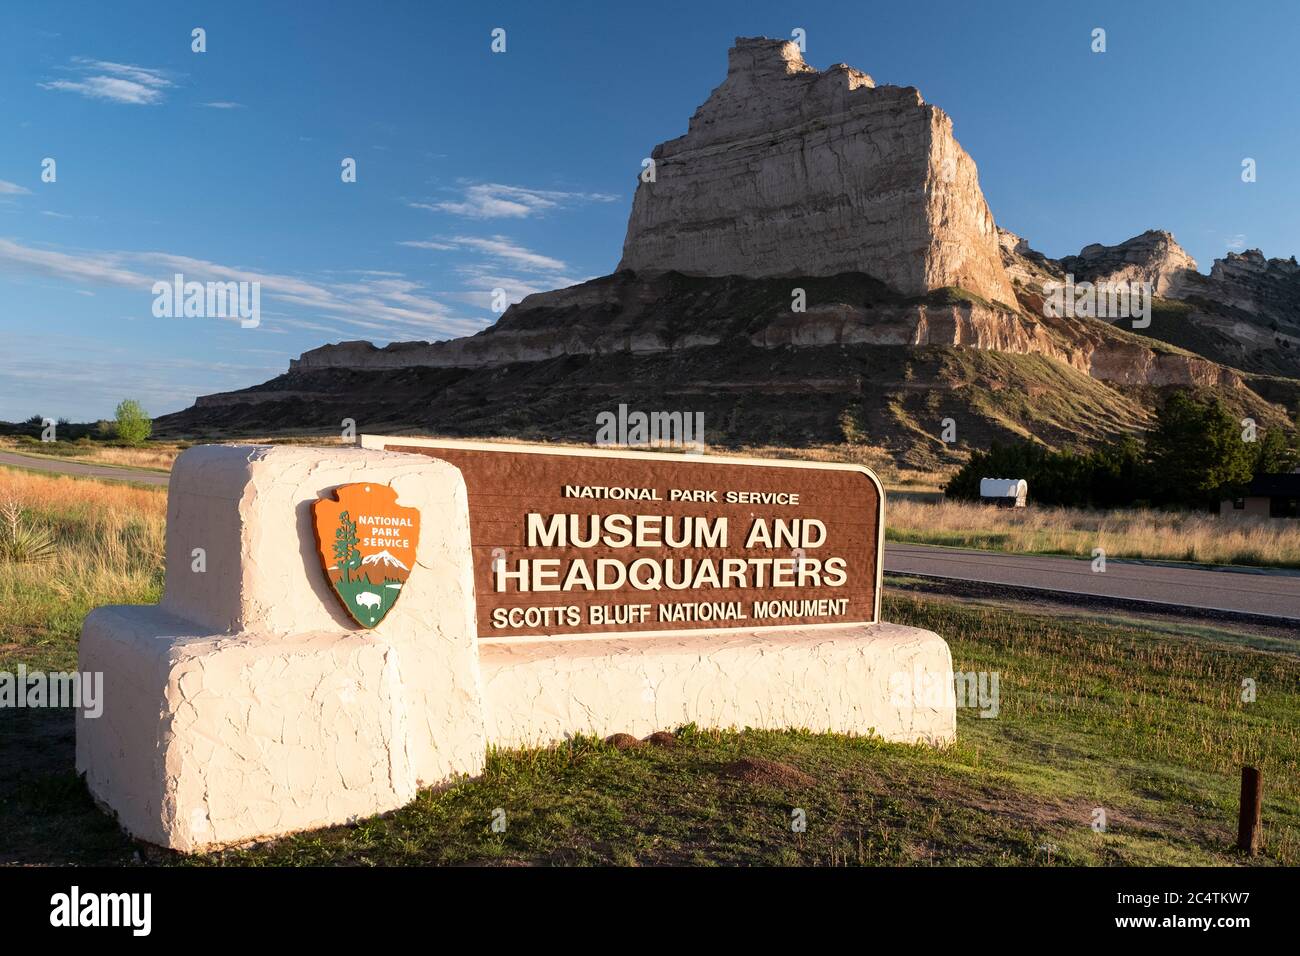 Firme para la sede y el museo en el Monumento Nacional Scotts Bluff a lo largo de la ruta de Oregón, Nebraska Foto de stock